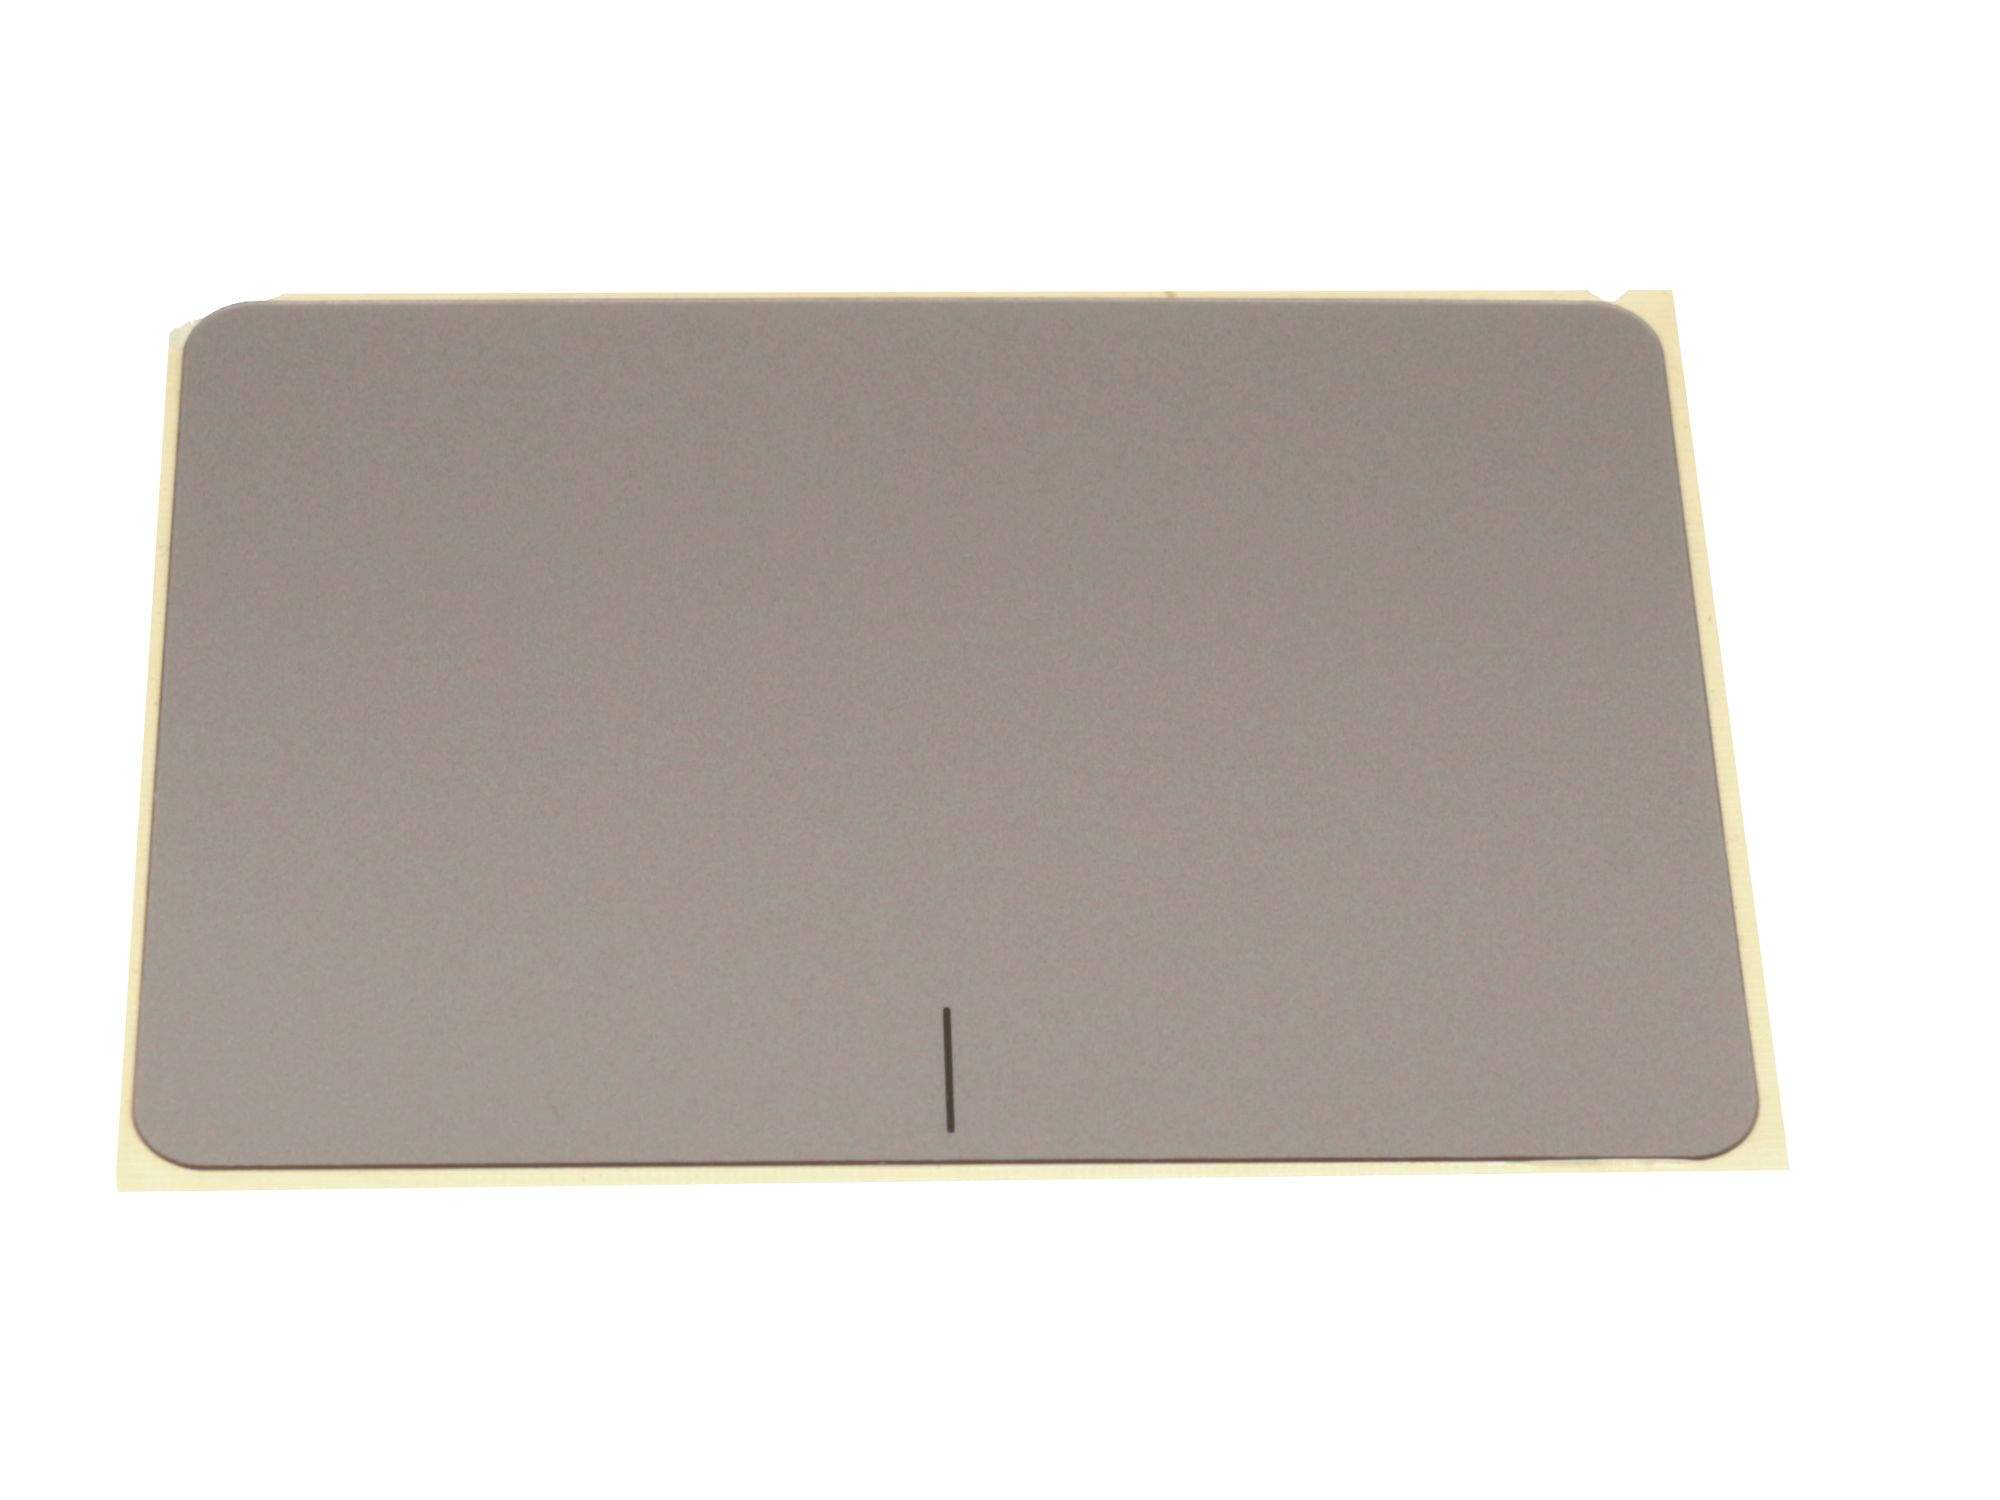 ASUS Touchpad Abdeckung braun Original für Asus F556UA Serie